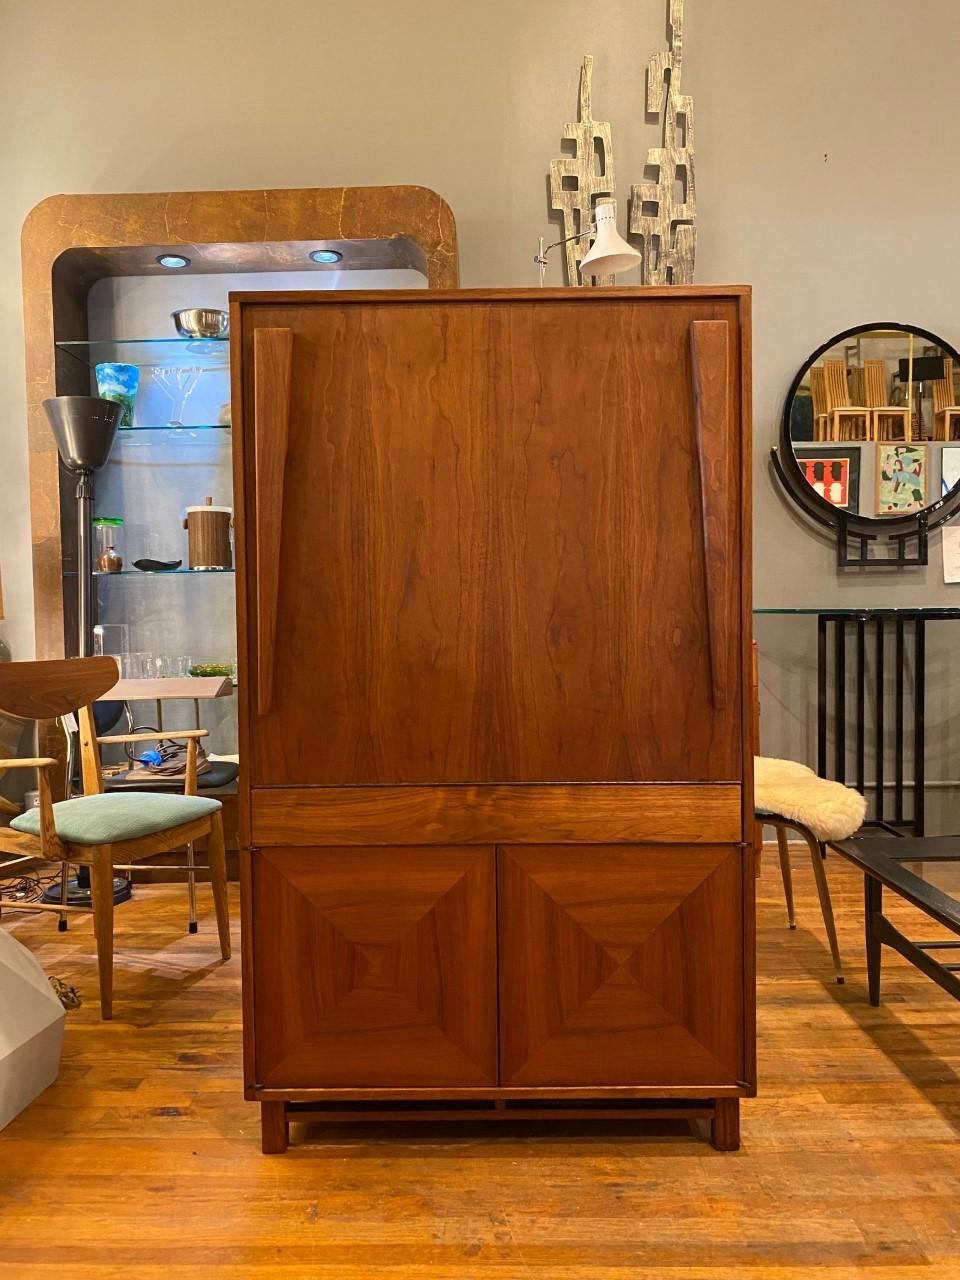 Une conception incroyable et intelligente par John Keal pour Brown Saltman. Cette incroyable armoire vintage de la fin des années 1950 transcende les décennies pour étonner par son design intelligent et son utilité. À l'extérieur, le meuble est